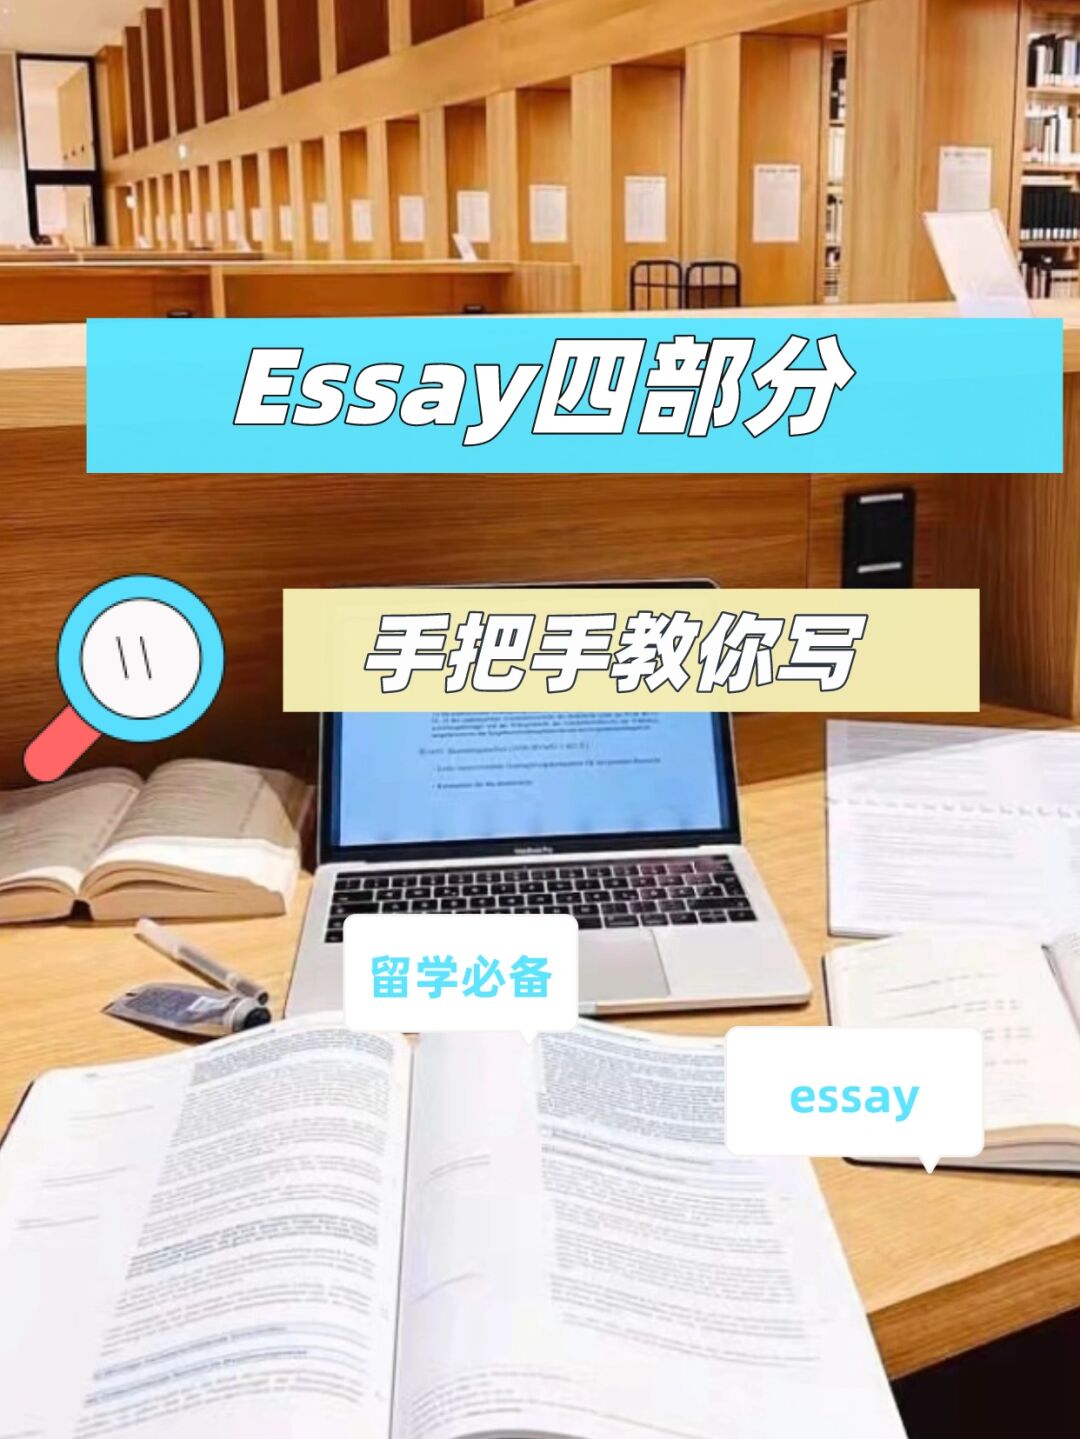 英语essay代写 – 手把手教你写essay的四个部分 – 专业essay代写